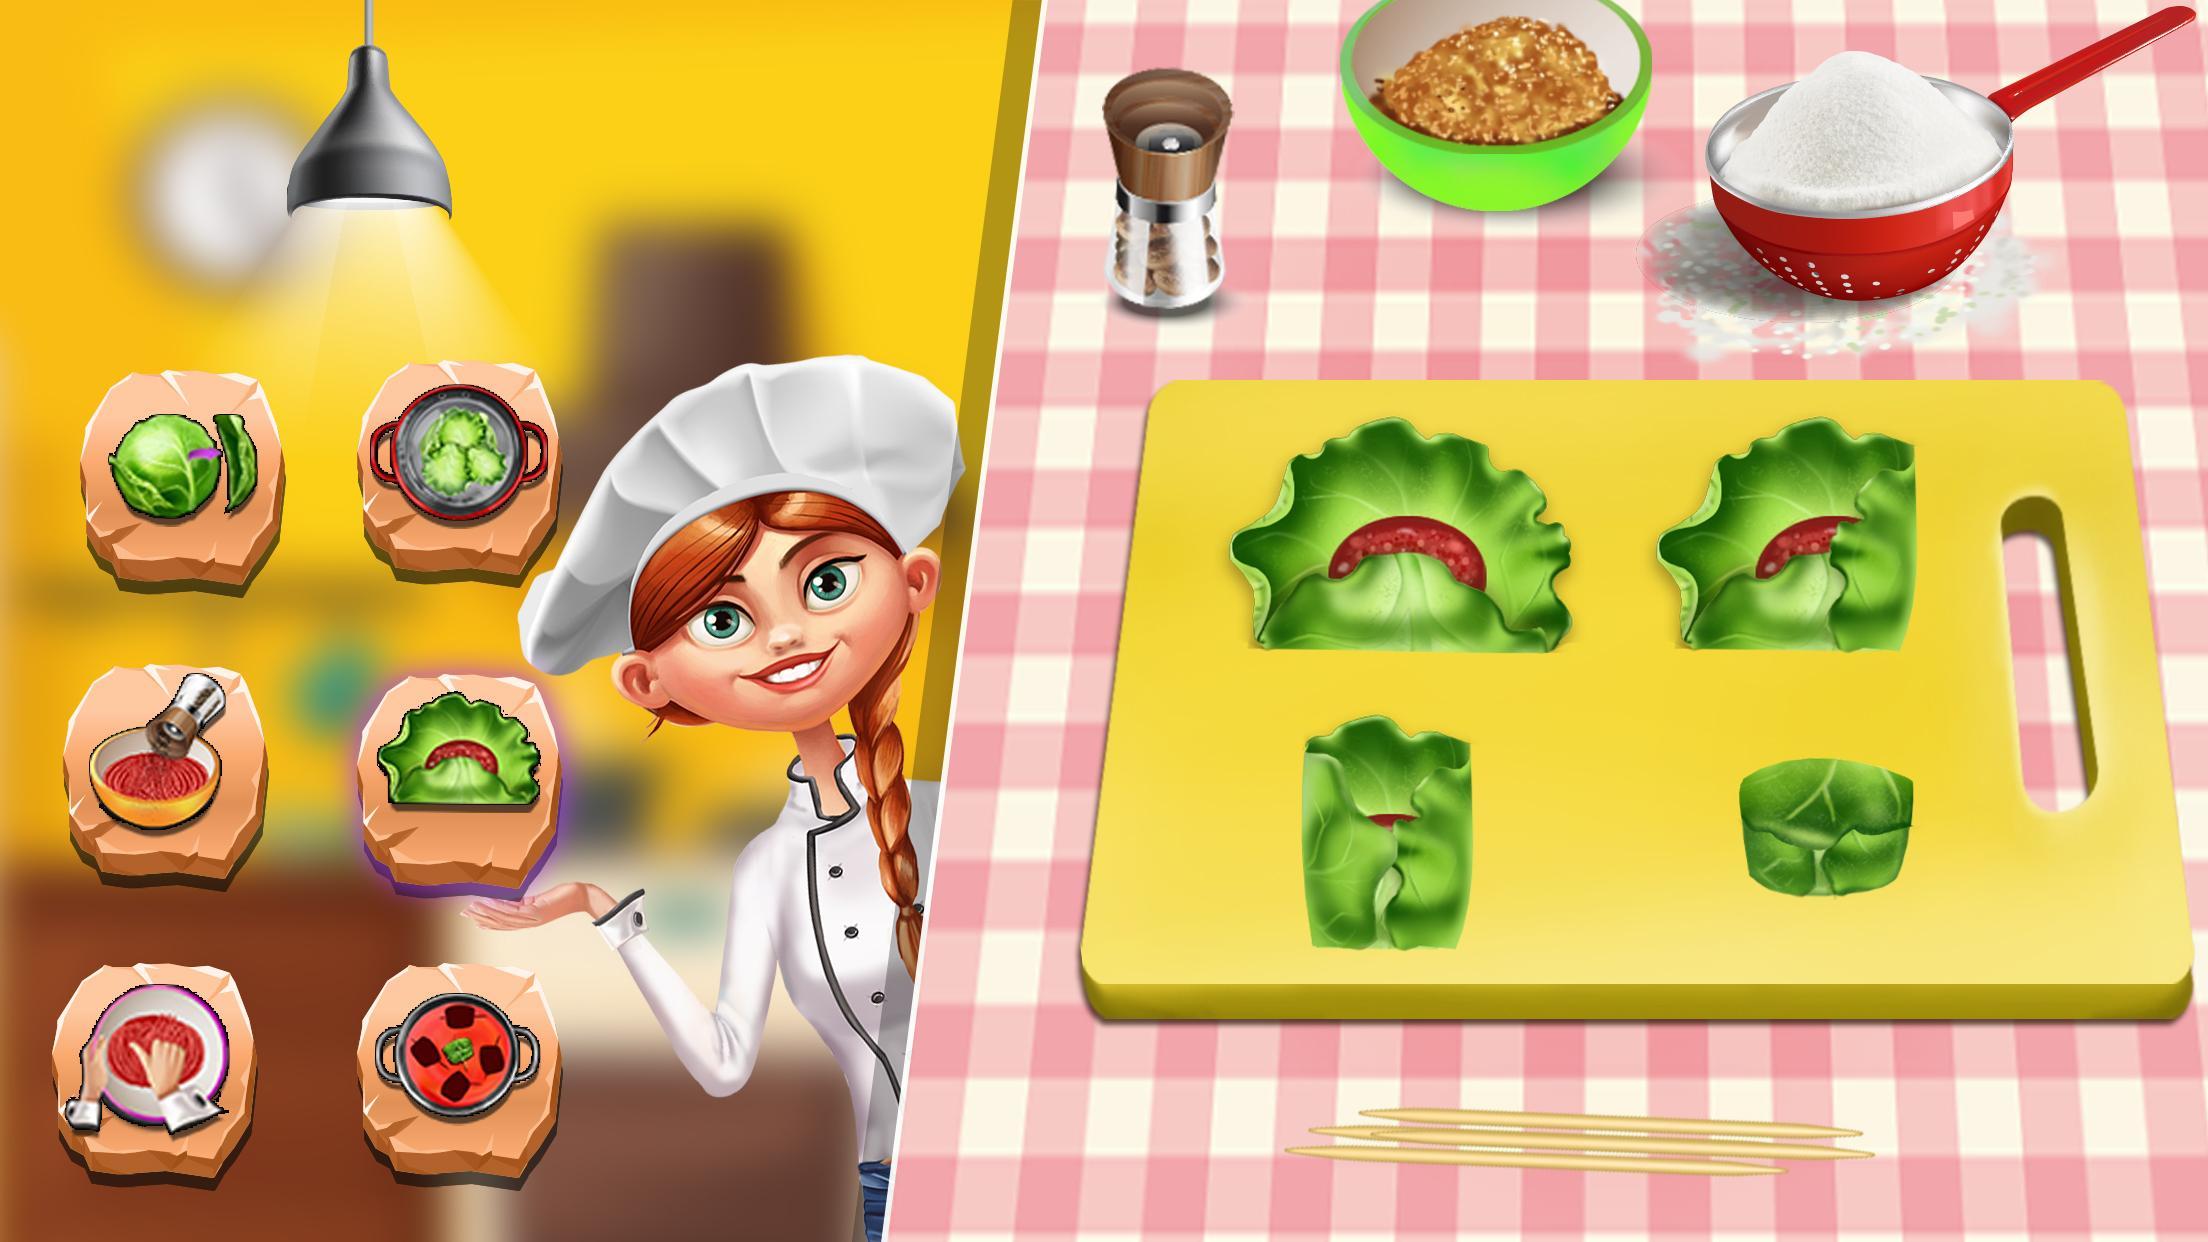 Игра Cooking Frenzy. Готовка с мамой игра. Кулинарное безумие -игра повар. Кулинарное безумие IOS. Рецепты мамы маши